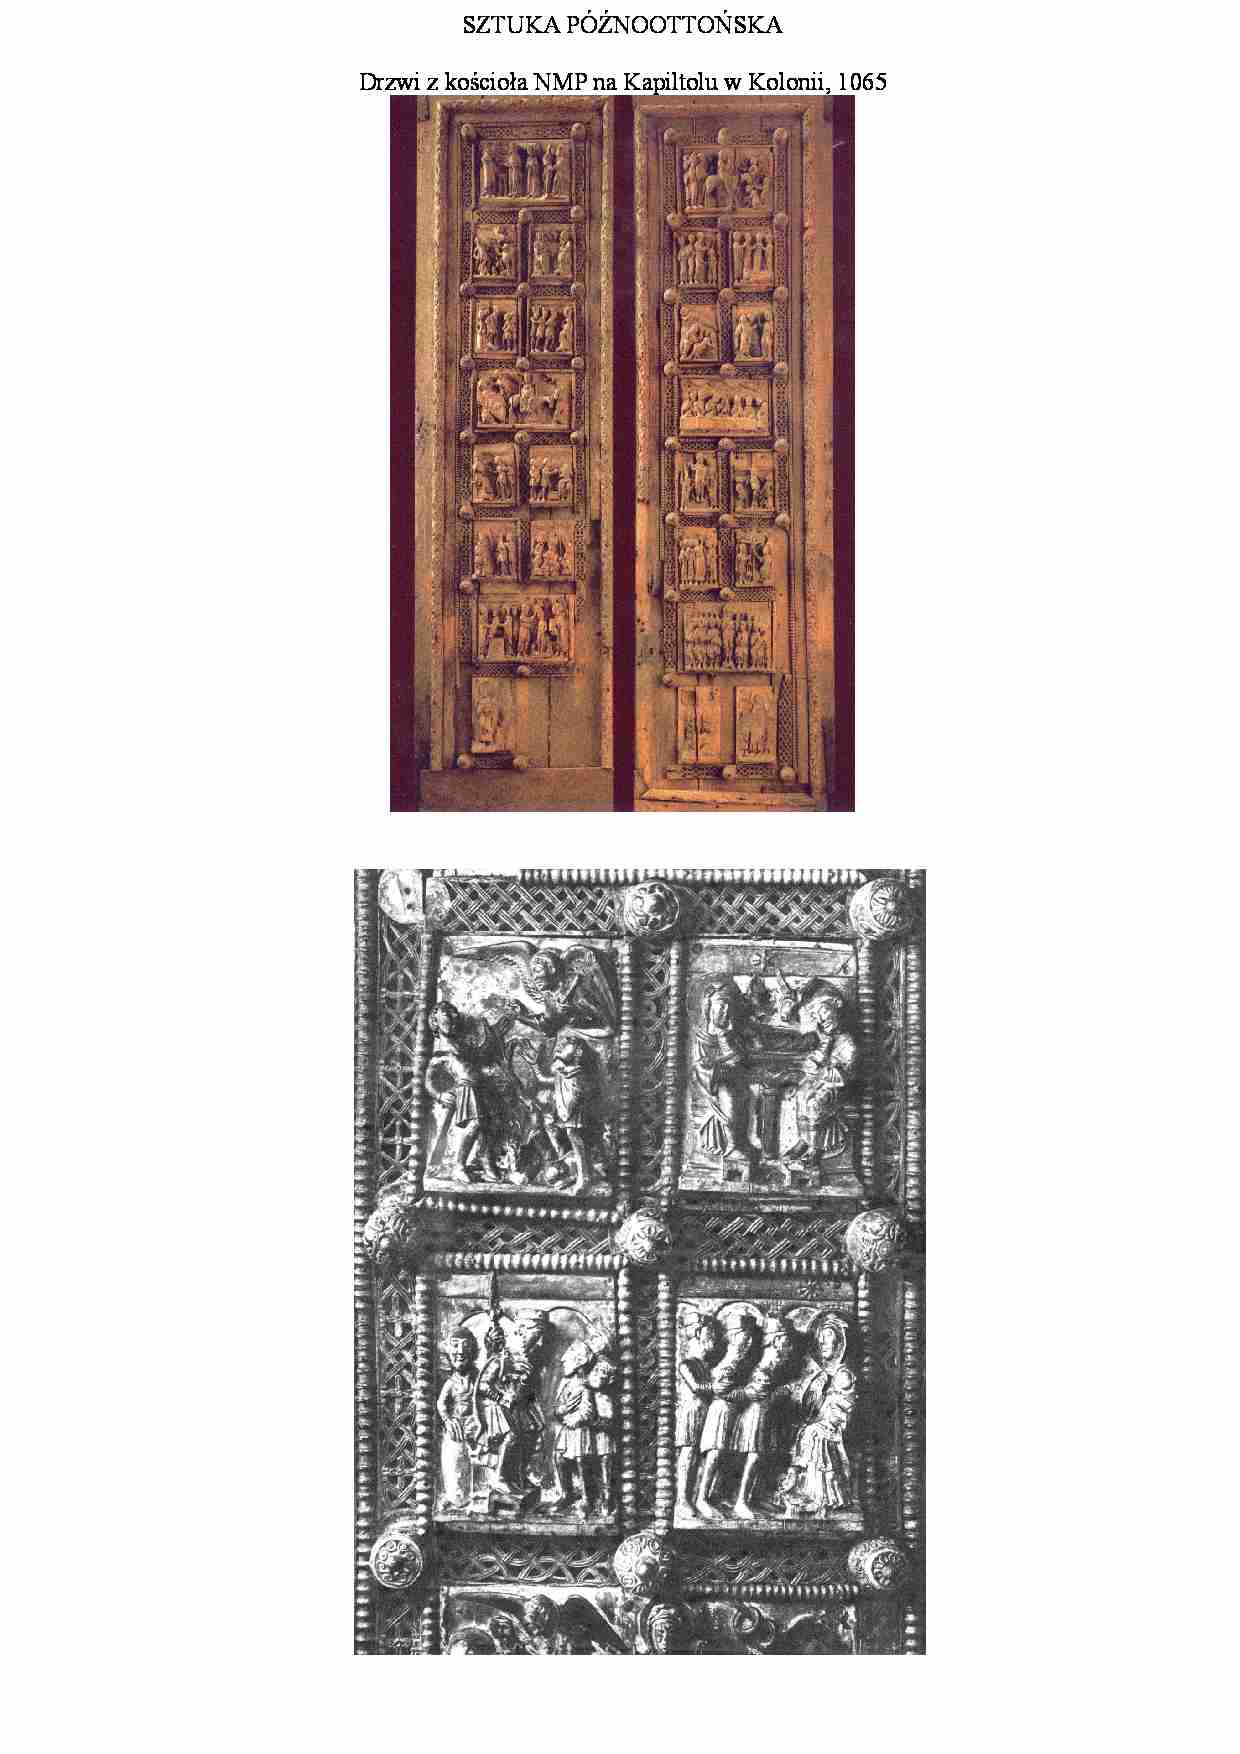 Drzwi z kościoła NMP na Kapiltolu w Kolonii - strona 1